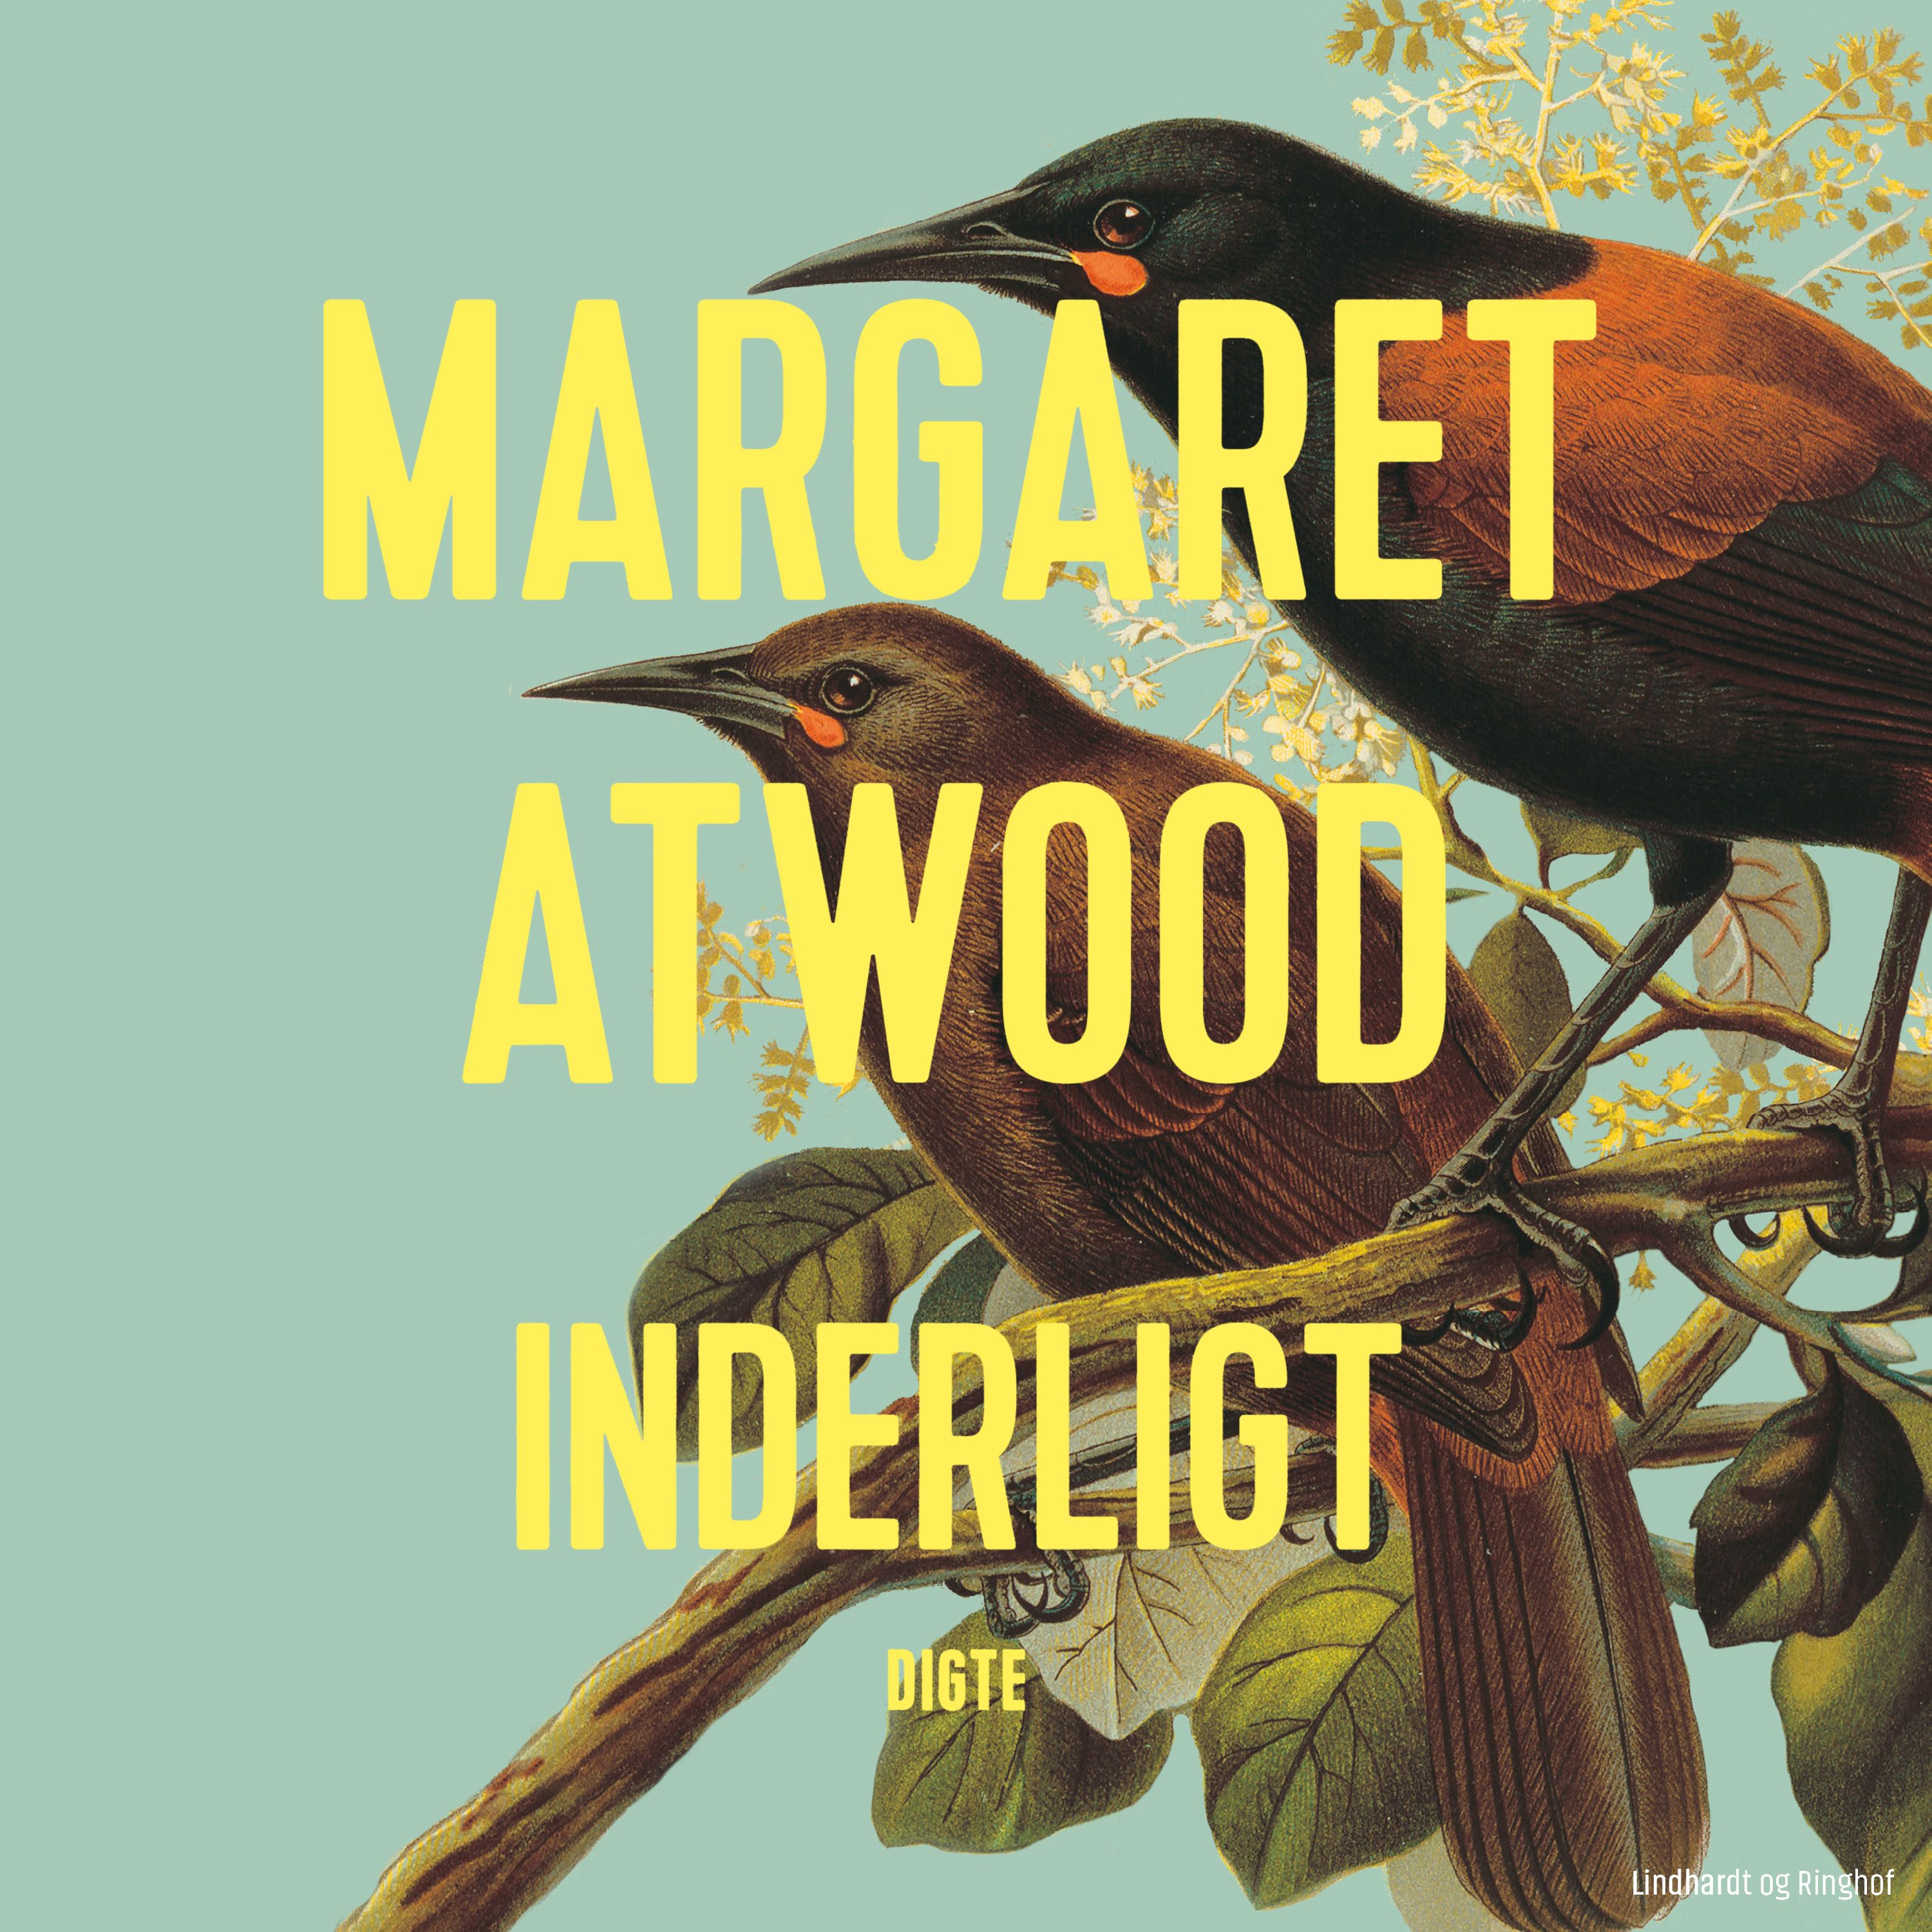 Inderligt, lydbog af Margaret Atwood